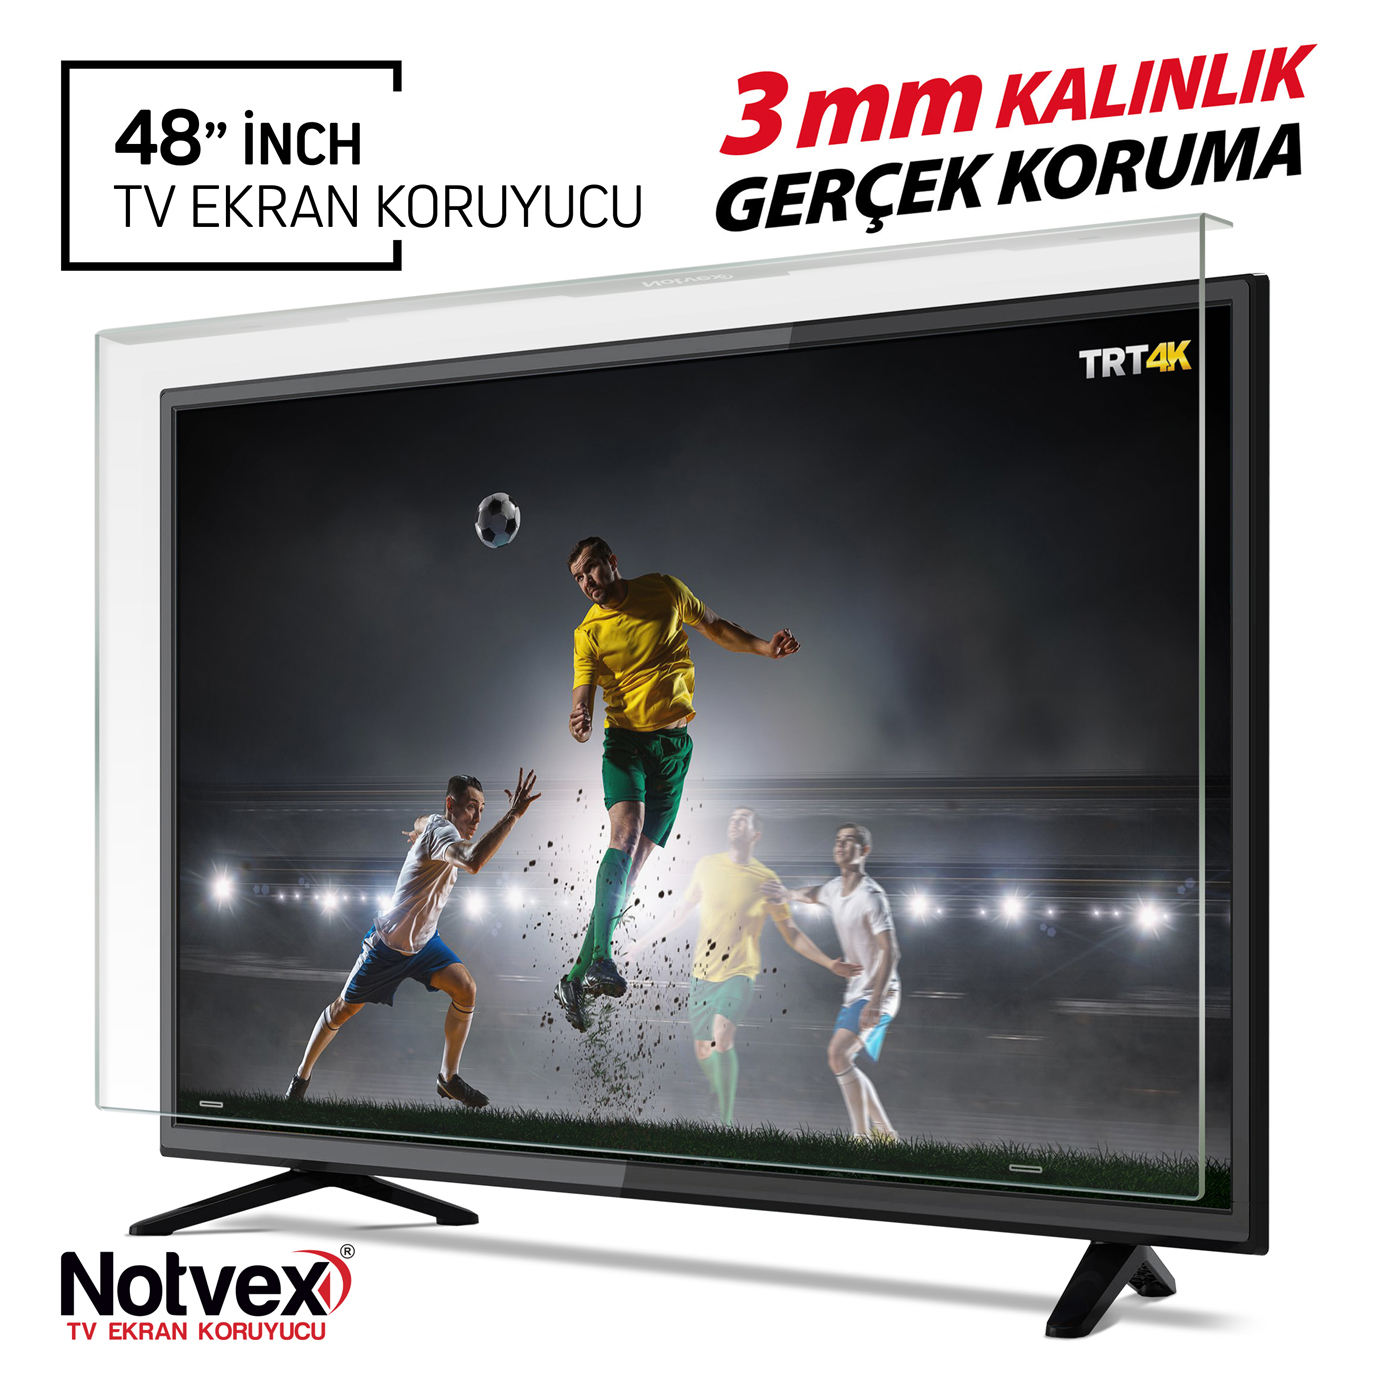 Notvex 48 İnç 122 Ekran Tv Ekran Koruyucu / 3 MM Kalınlık